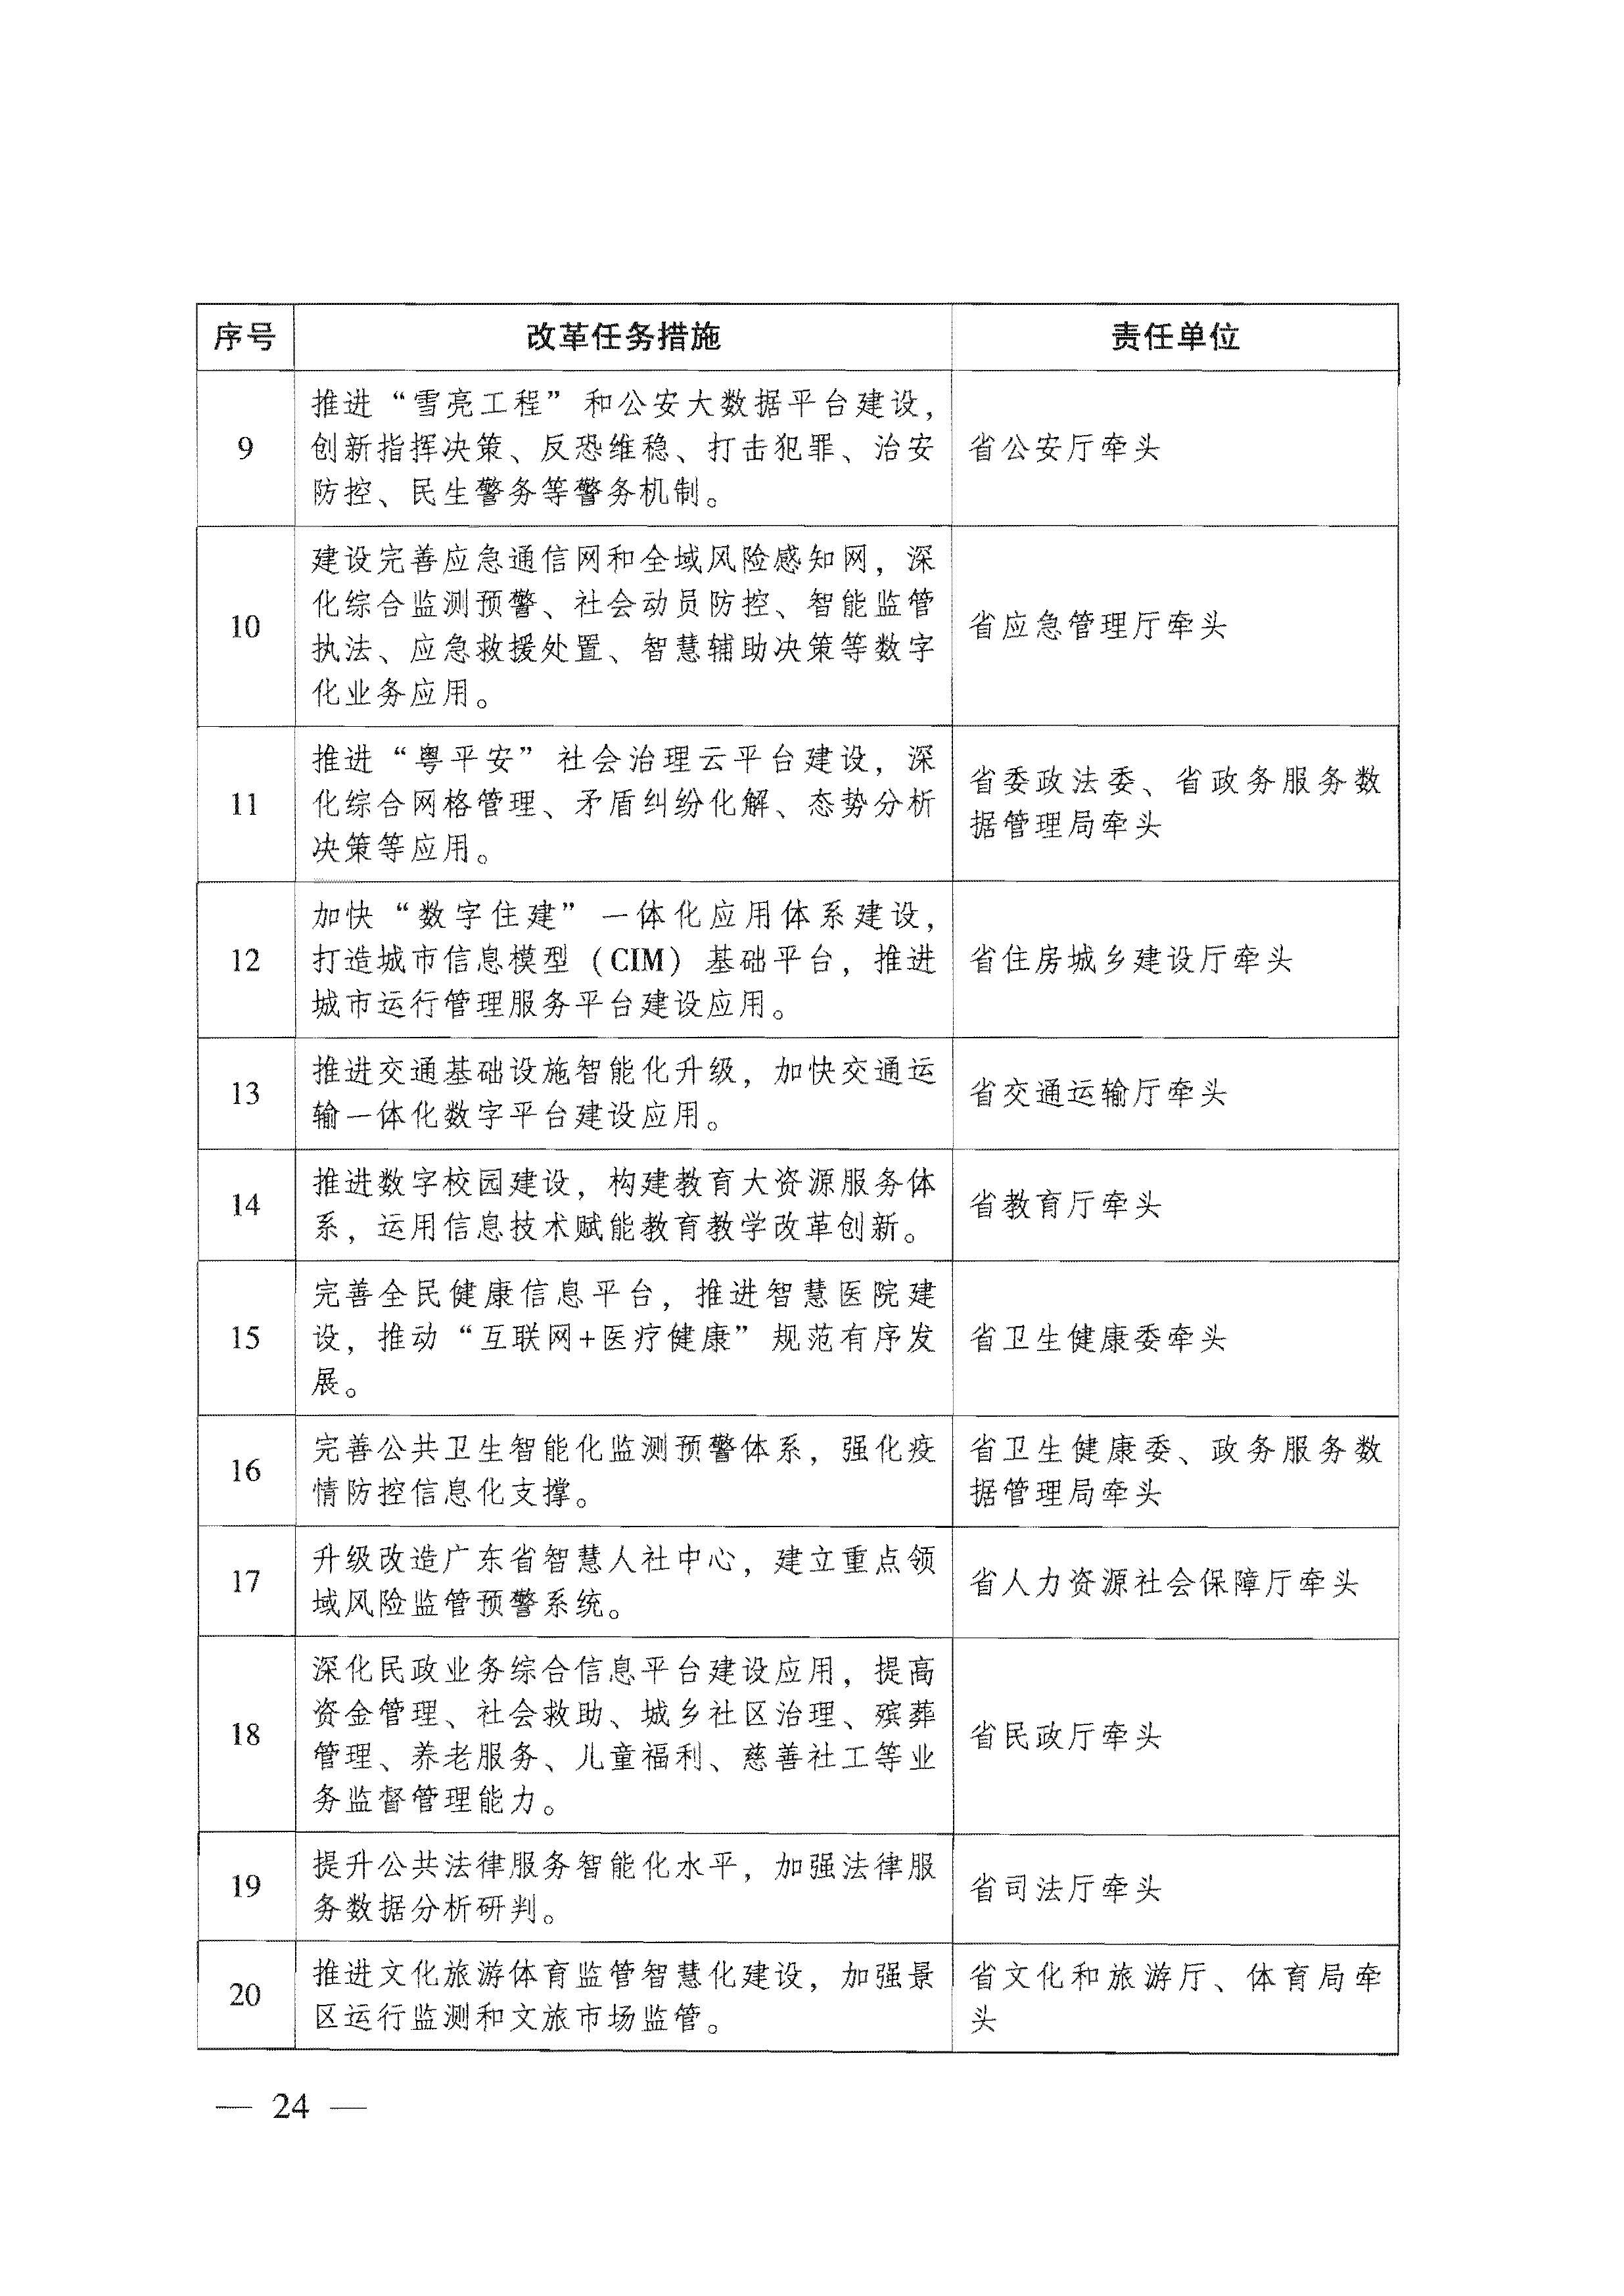 广东省人民政府关于进一步深化数字政府改革建设的实施意见_页面_24.jpg